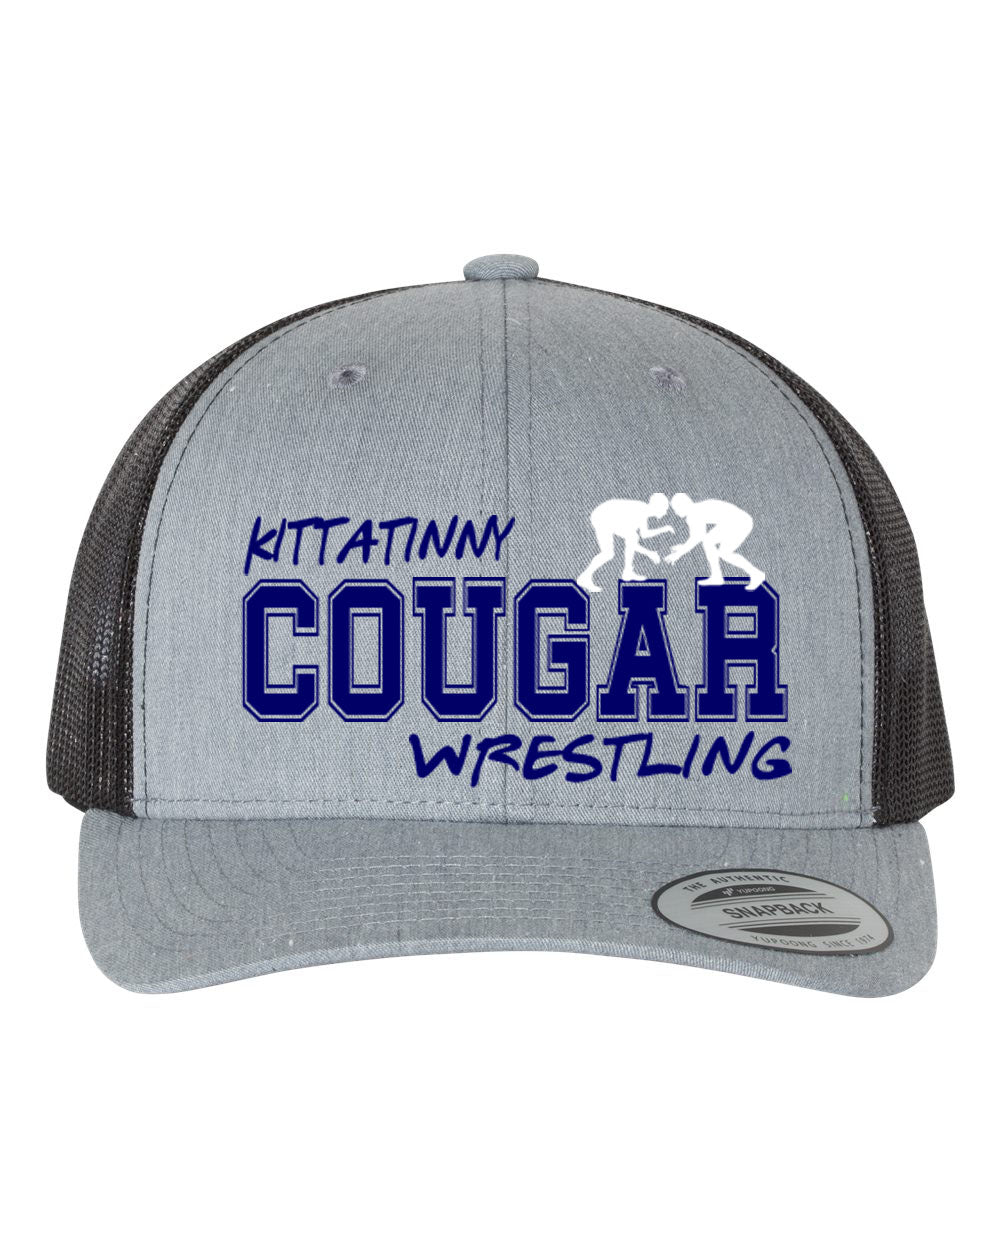 Kittatinny Wrestling Design 7 Trucker Hat